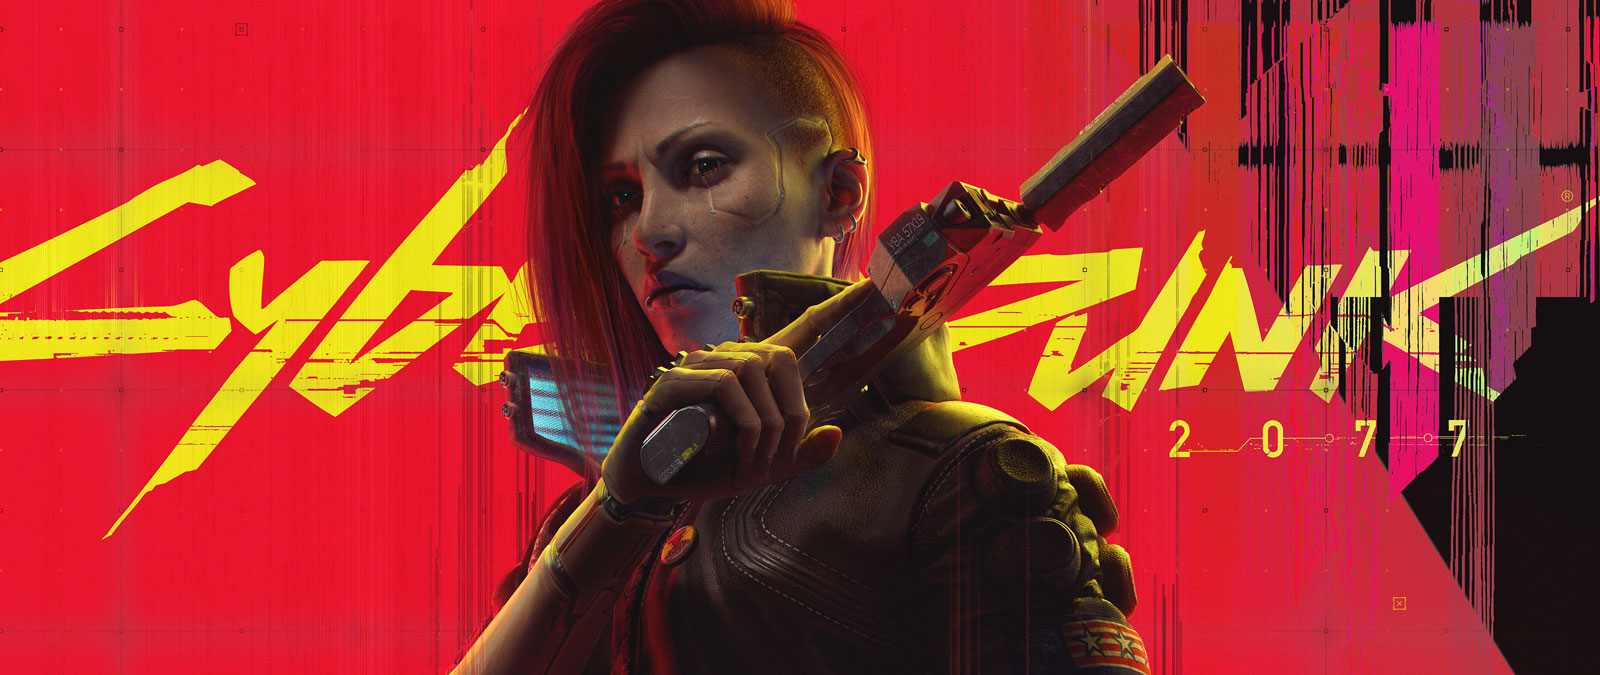 Cyberpunk 2077, un personaggio alterato ciberneticamente con una cicatrice sulla guancia alza la pistola in un'intimidazione noncurante.